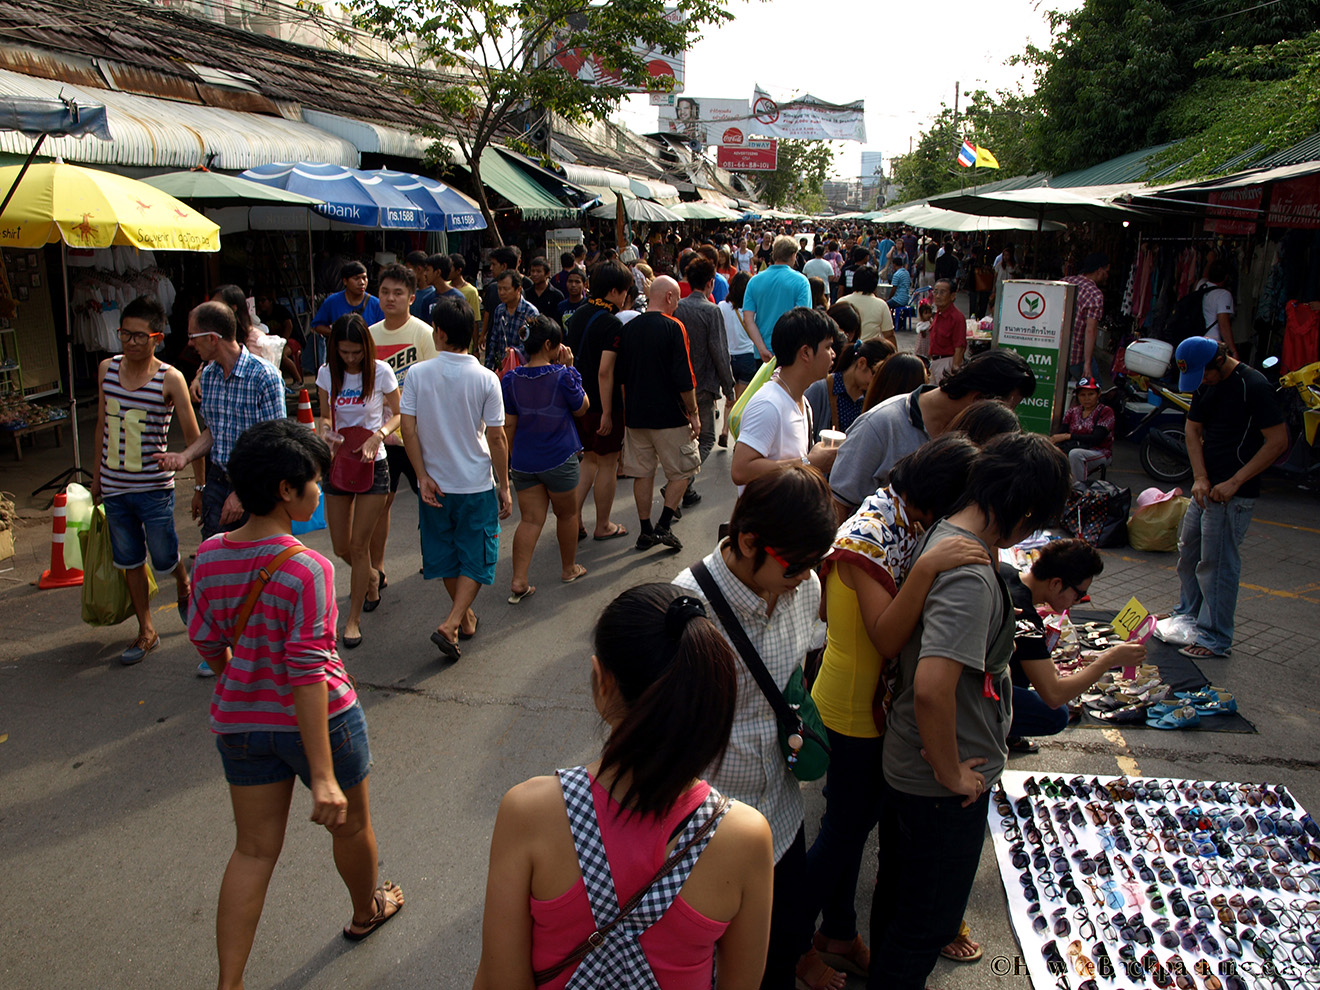 Камеры бангкока. Чатучак Бангкок. Таиланд рынок Чатучак. Рынок Чатучак (г. Бангкок). Рынок Чатучак в Бангкоке фото.